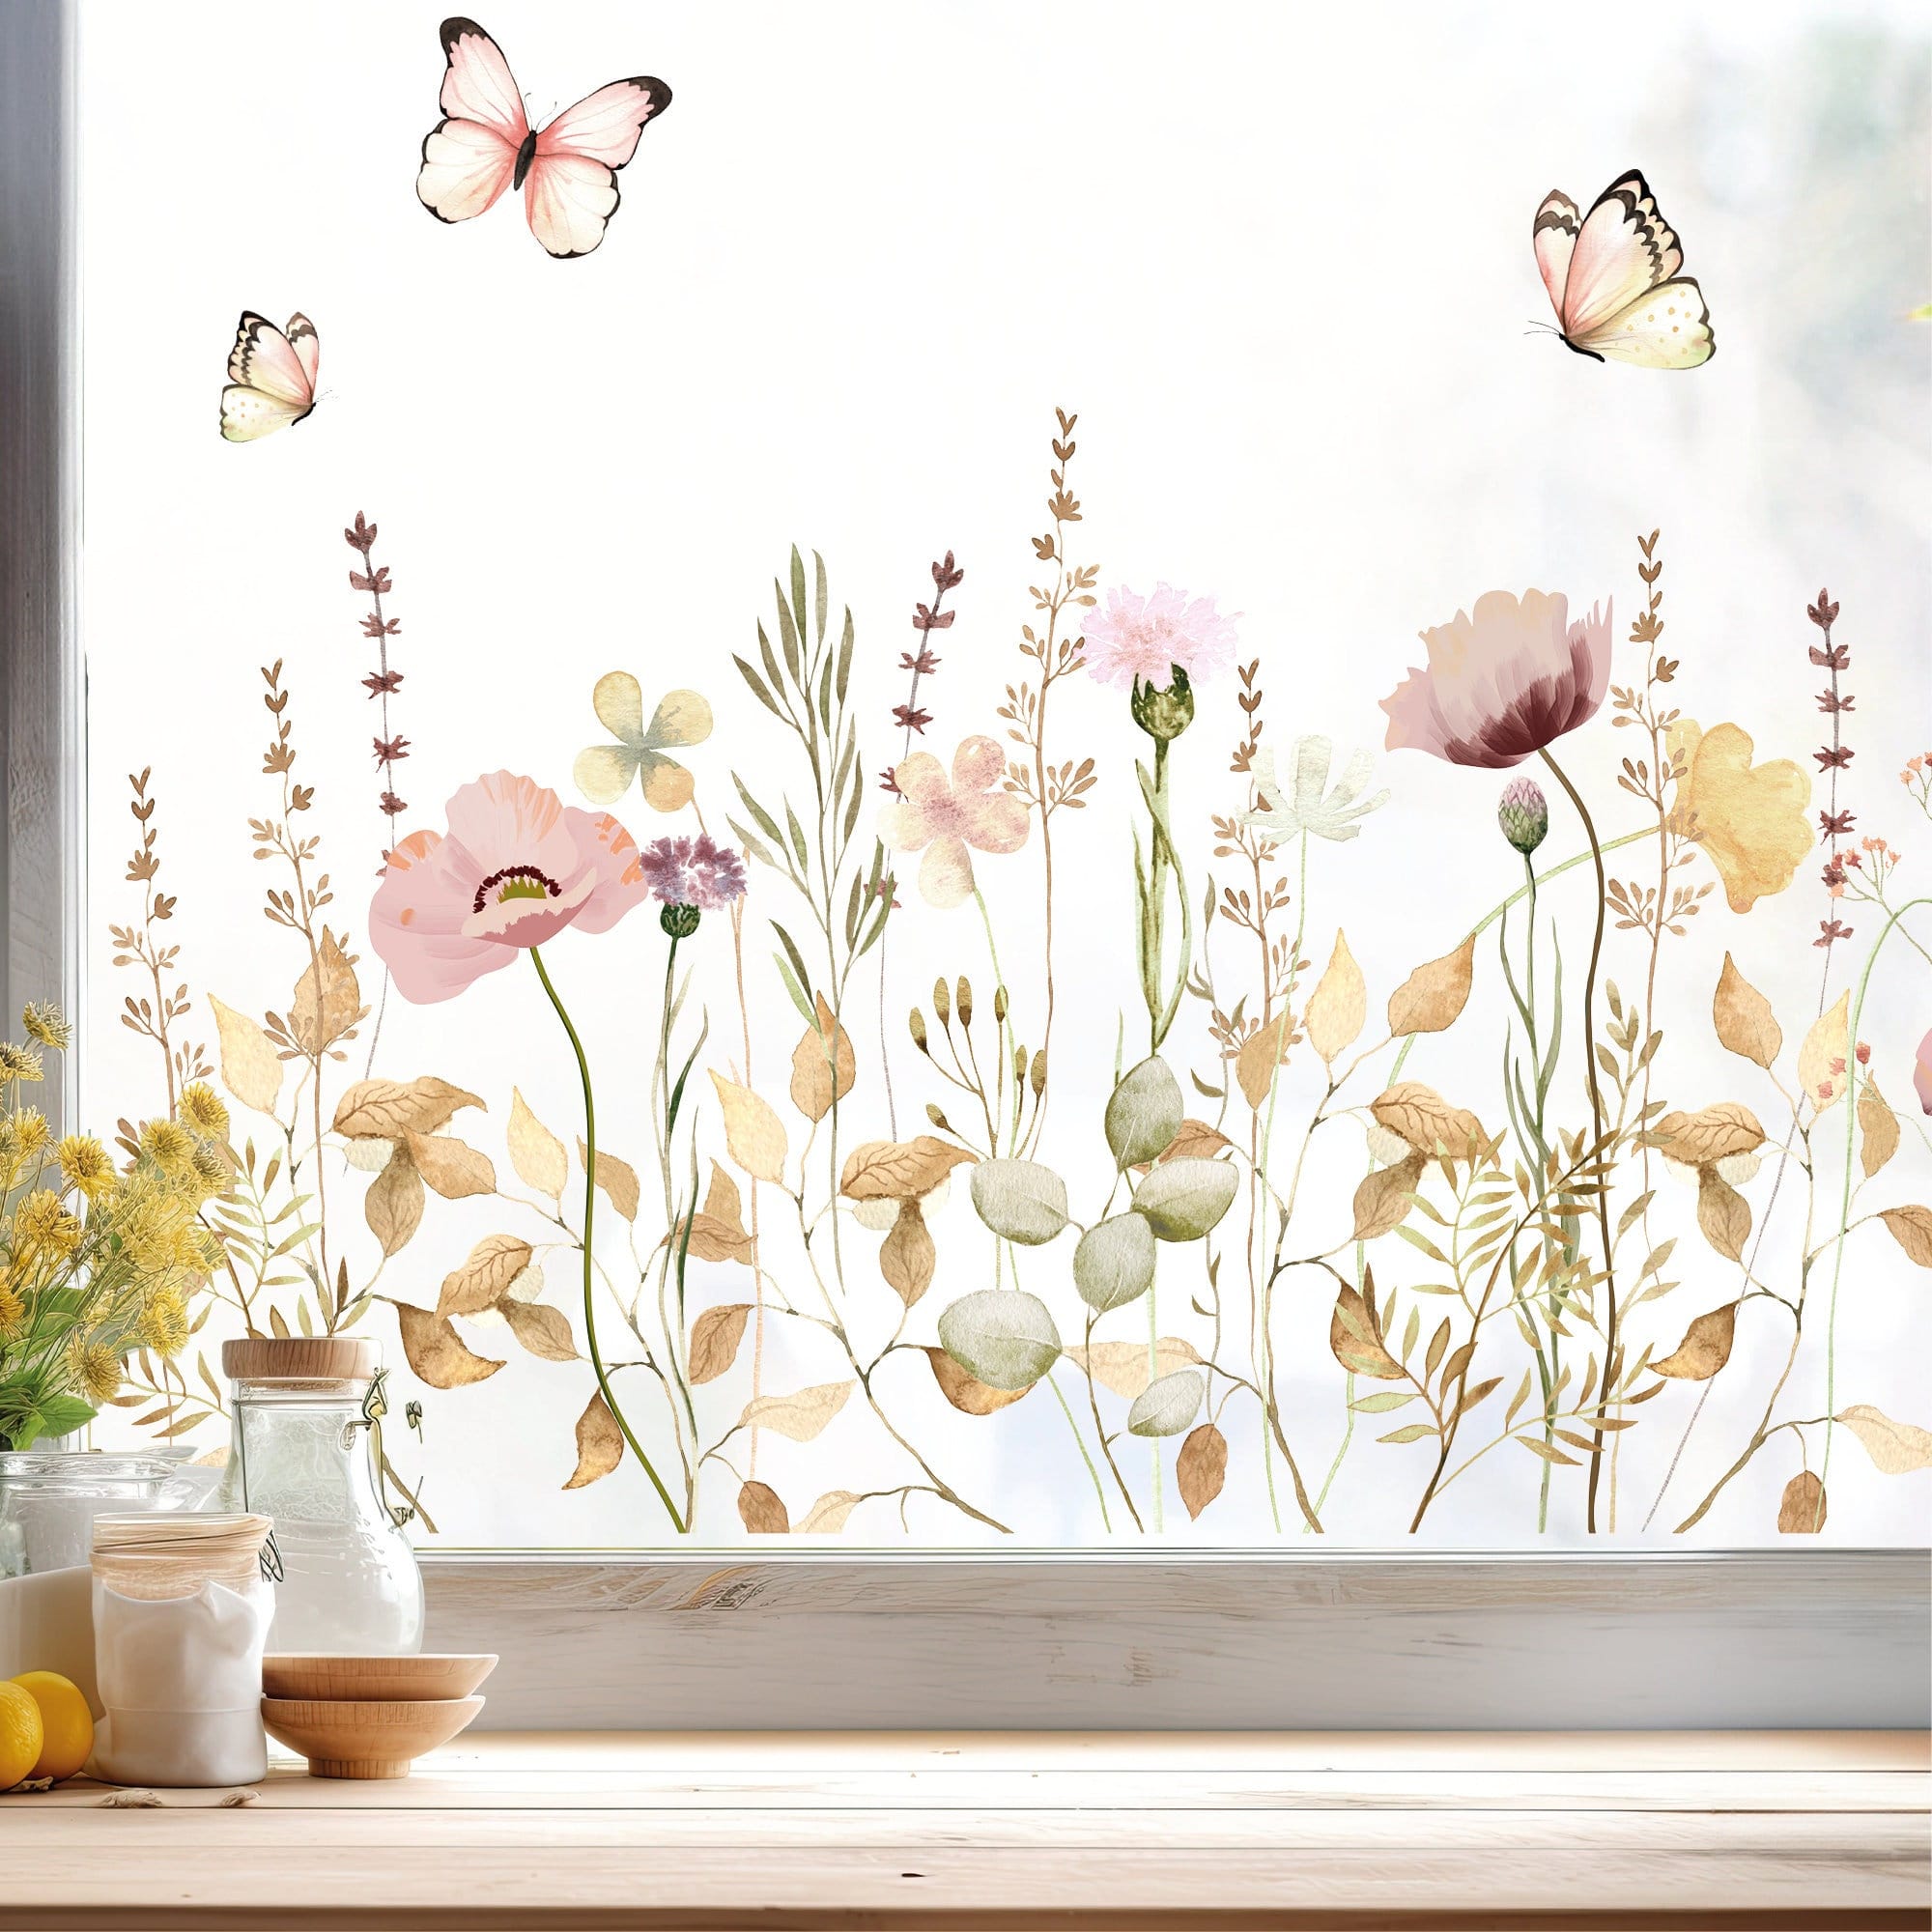 Fensterbild Feld- und Wiesenblumen wiederverwendbar pastell Blumenwiese mit Schmetterlingen Hummeln Fensterdekoration